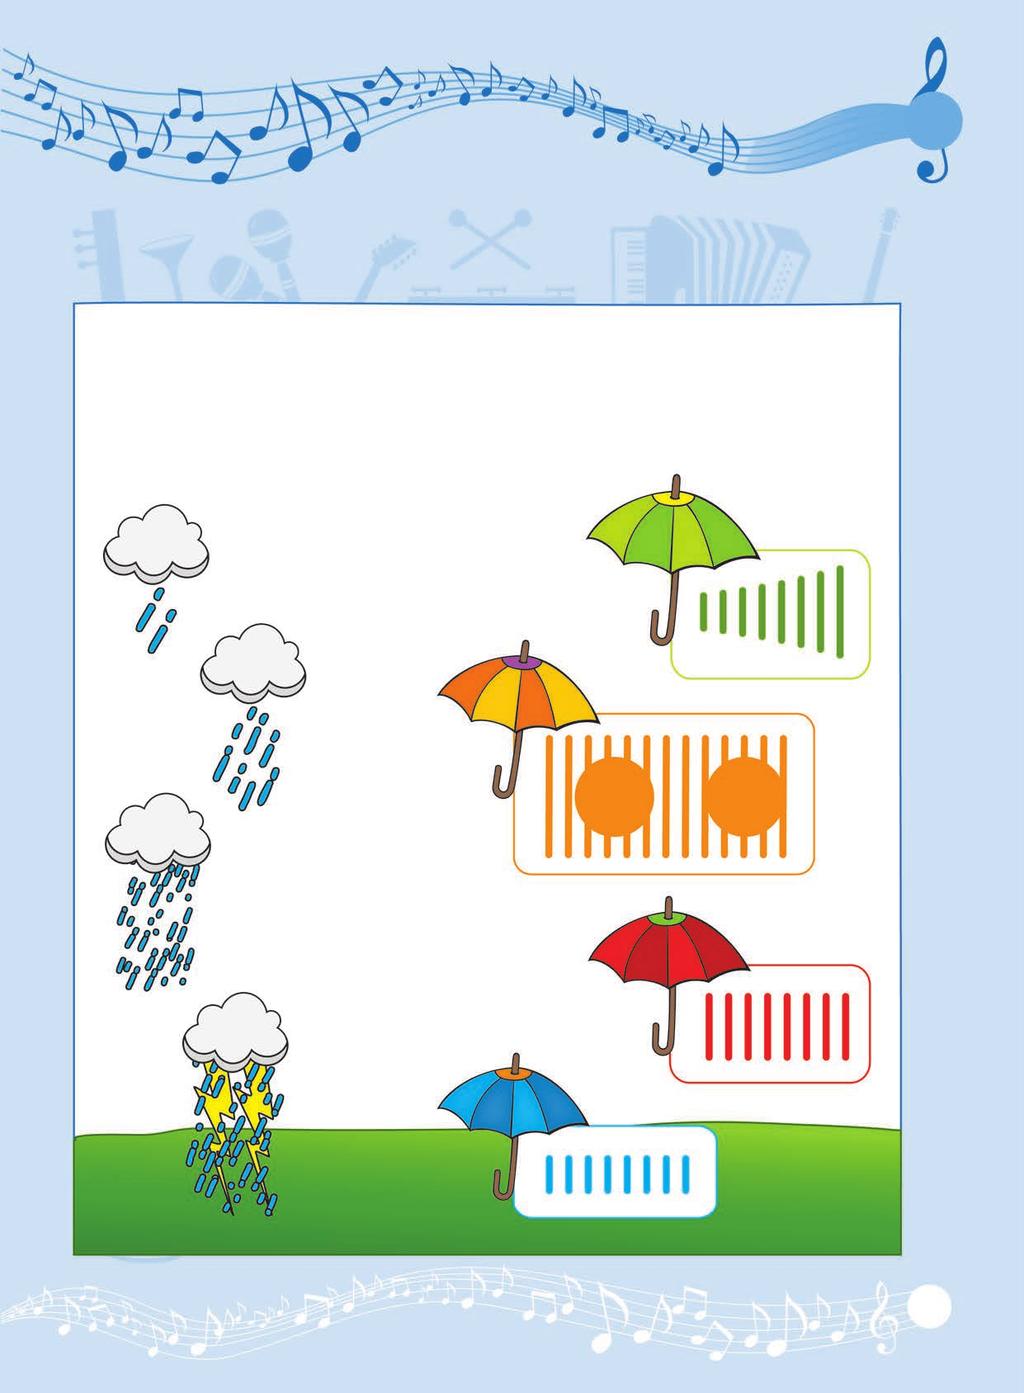 5 Βρέχει τραγούδια! Τα παιχνίδια της βροχής ες πόσα είδη βροχής υπάρχουν!